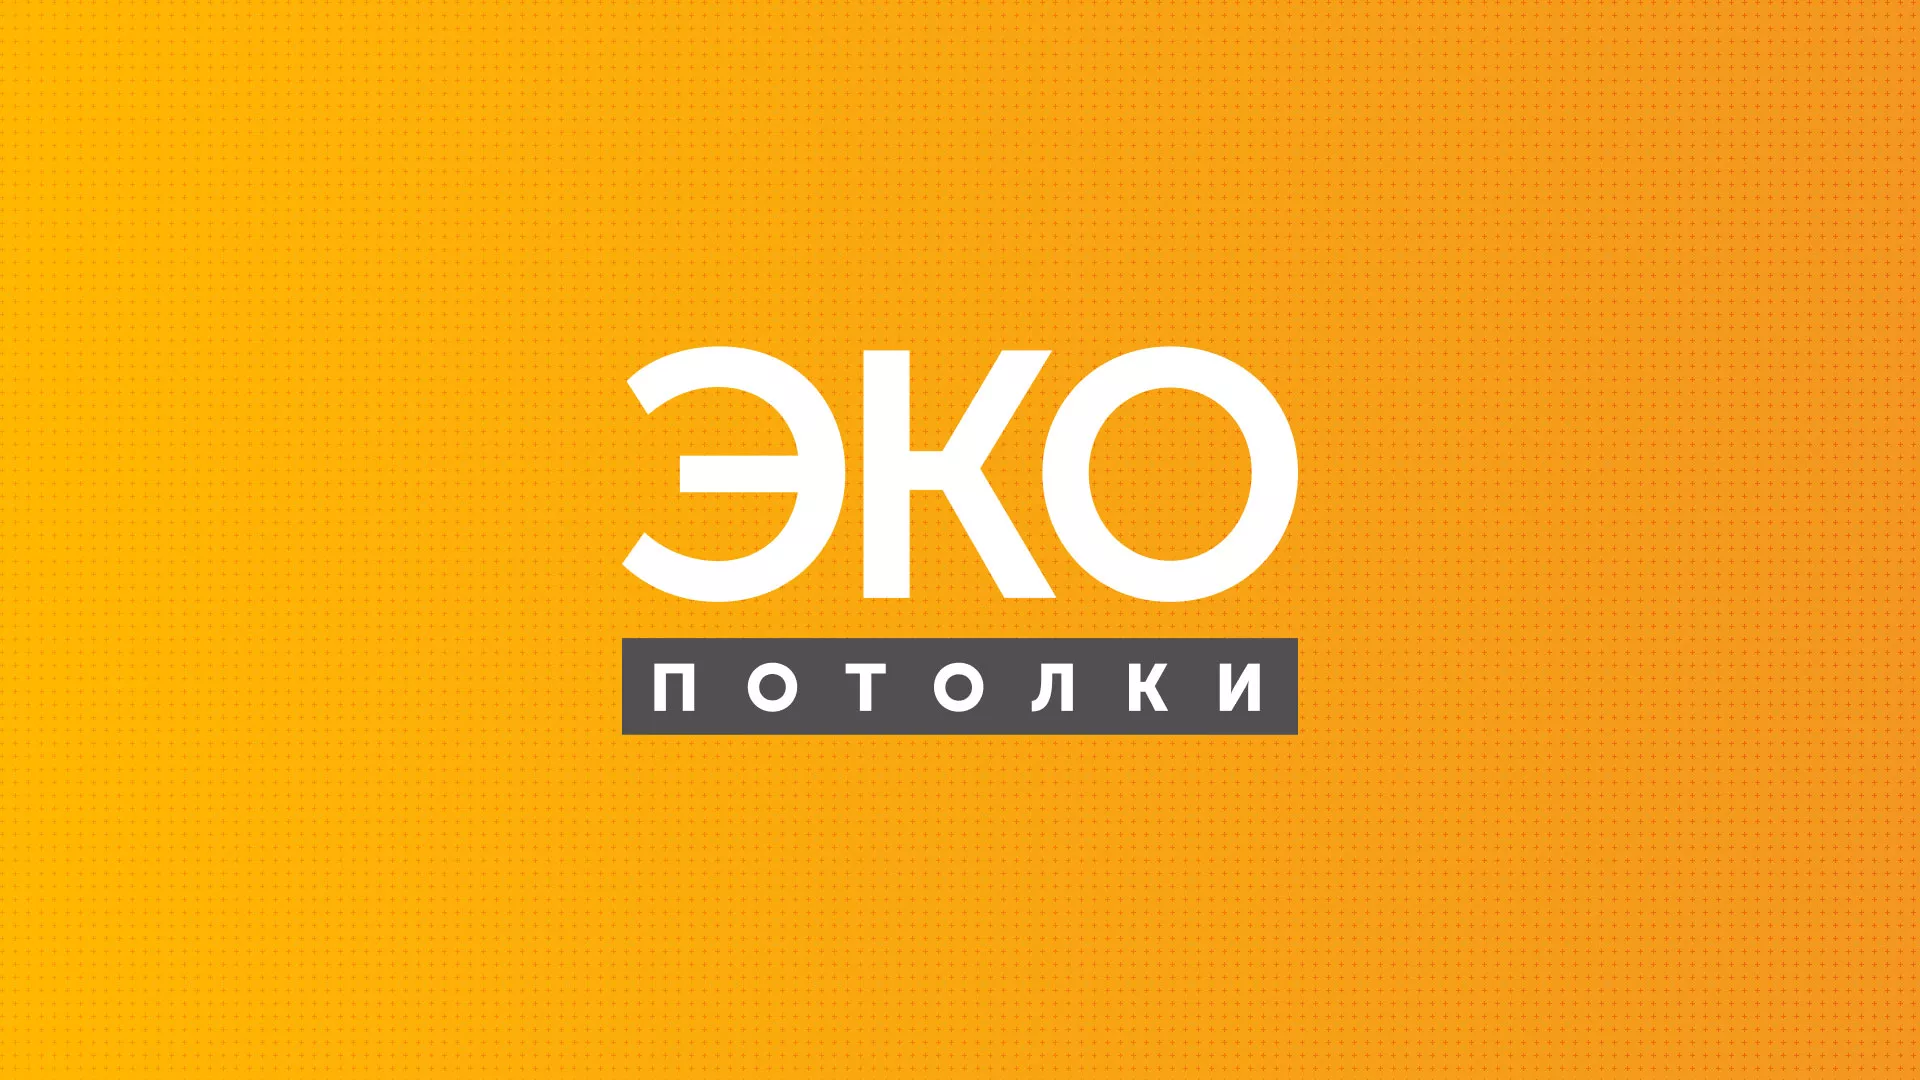 Разработка сайта по натяжным потолкам «Эко Потолки» в Ярославле